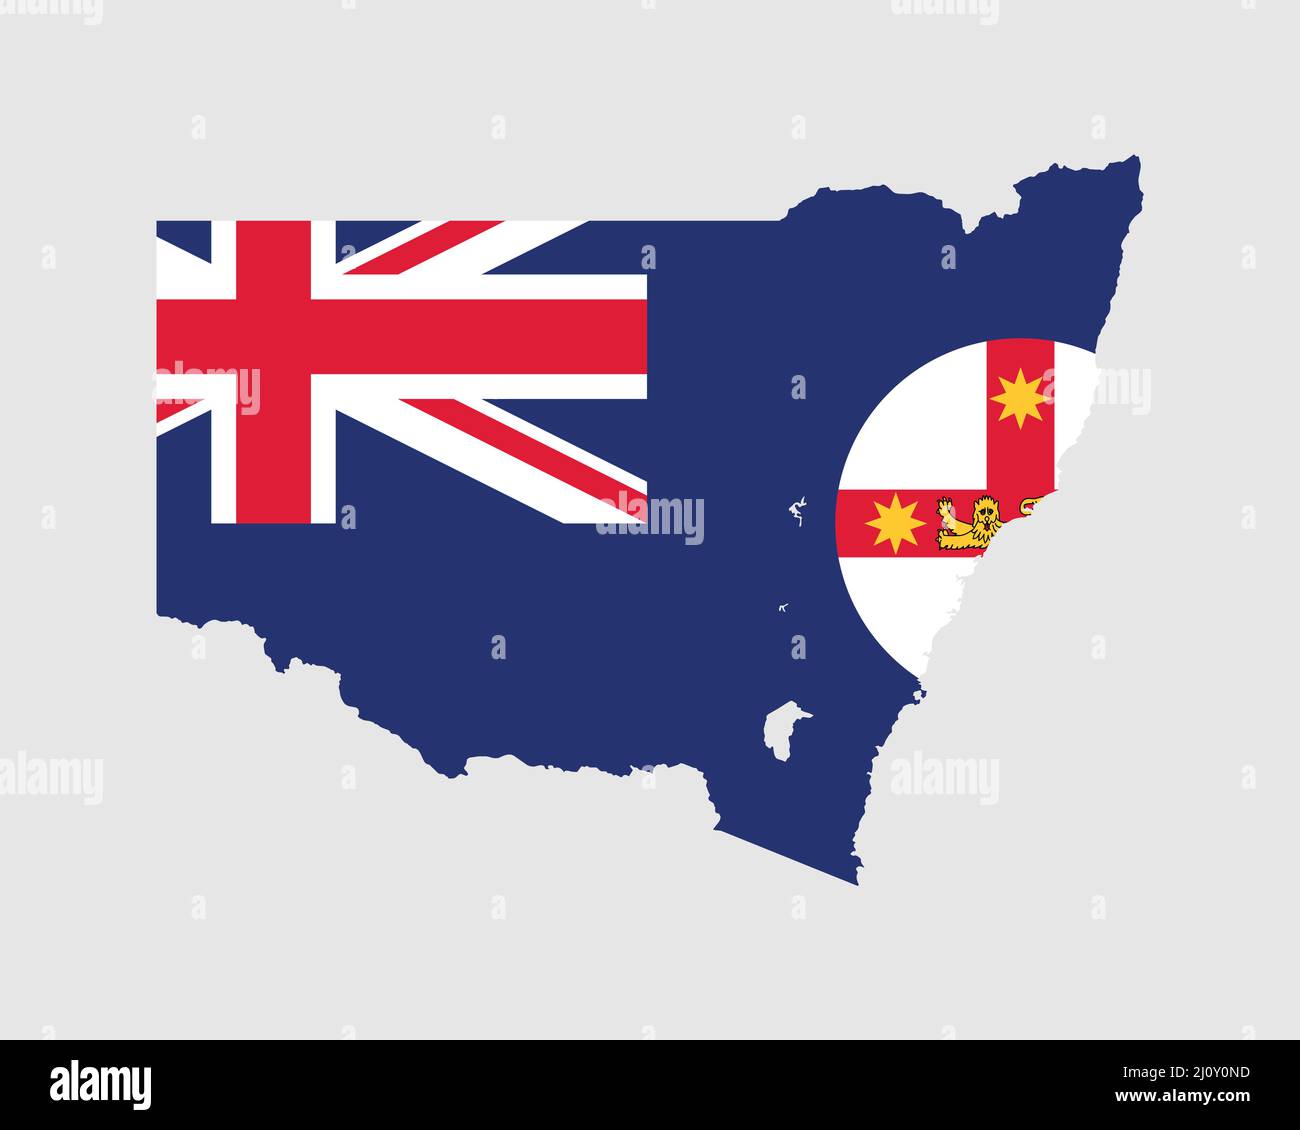 Bandiera della mappa del nuovo Galles del Sud. Mappa di NSW con flag di stato. Stato australiano sulla costa orientale dell'Australia. Banner illustrazione vettoriale. Illustrazione Vettoriale